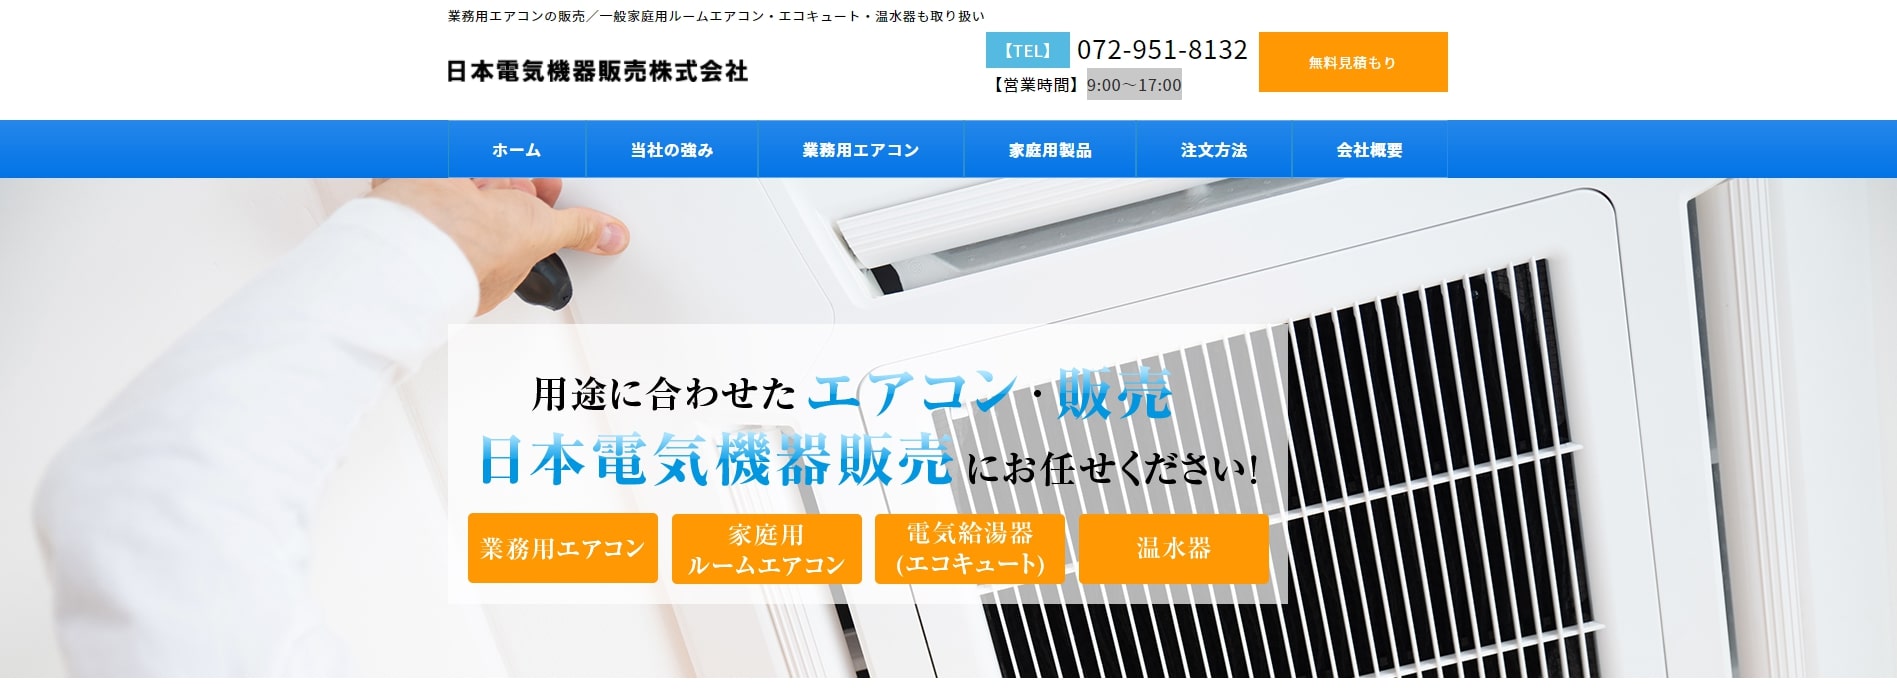 日本電気機器販売株式会社